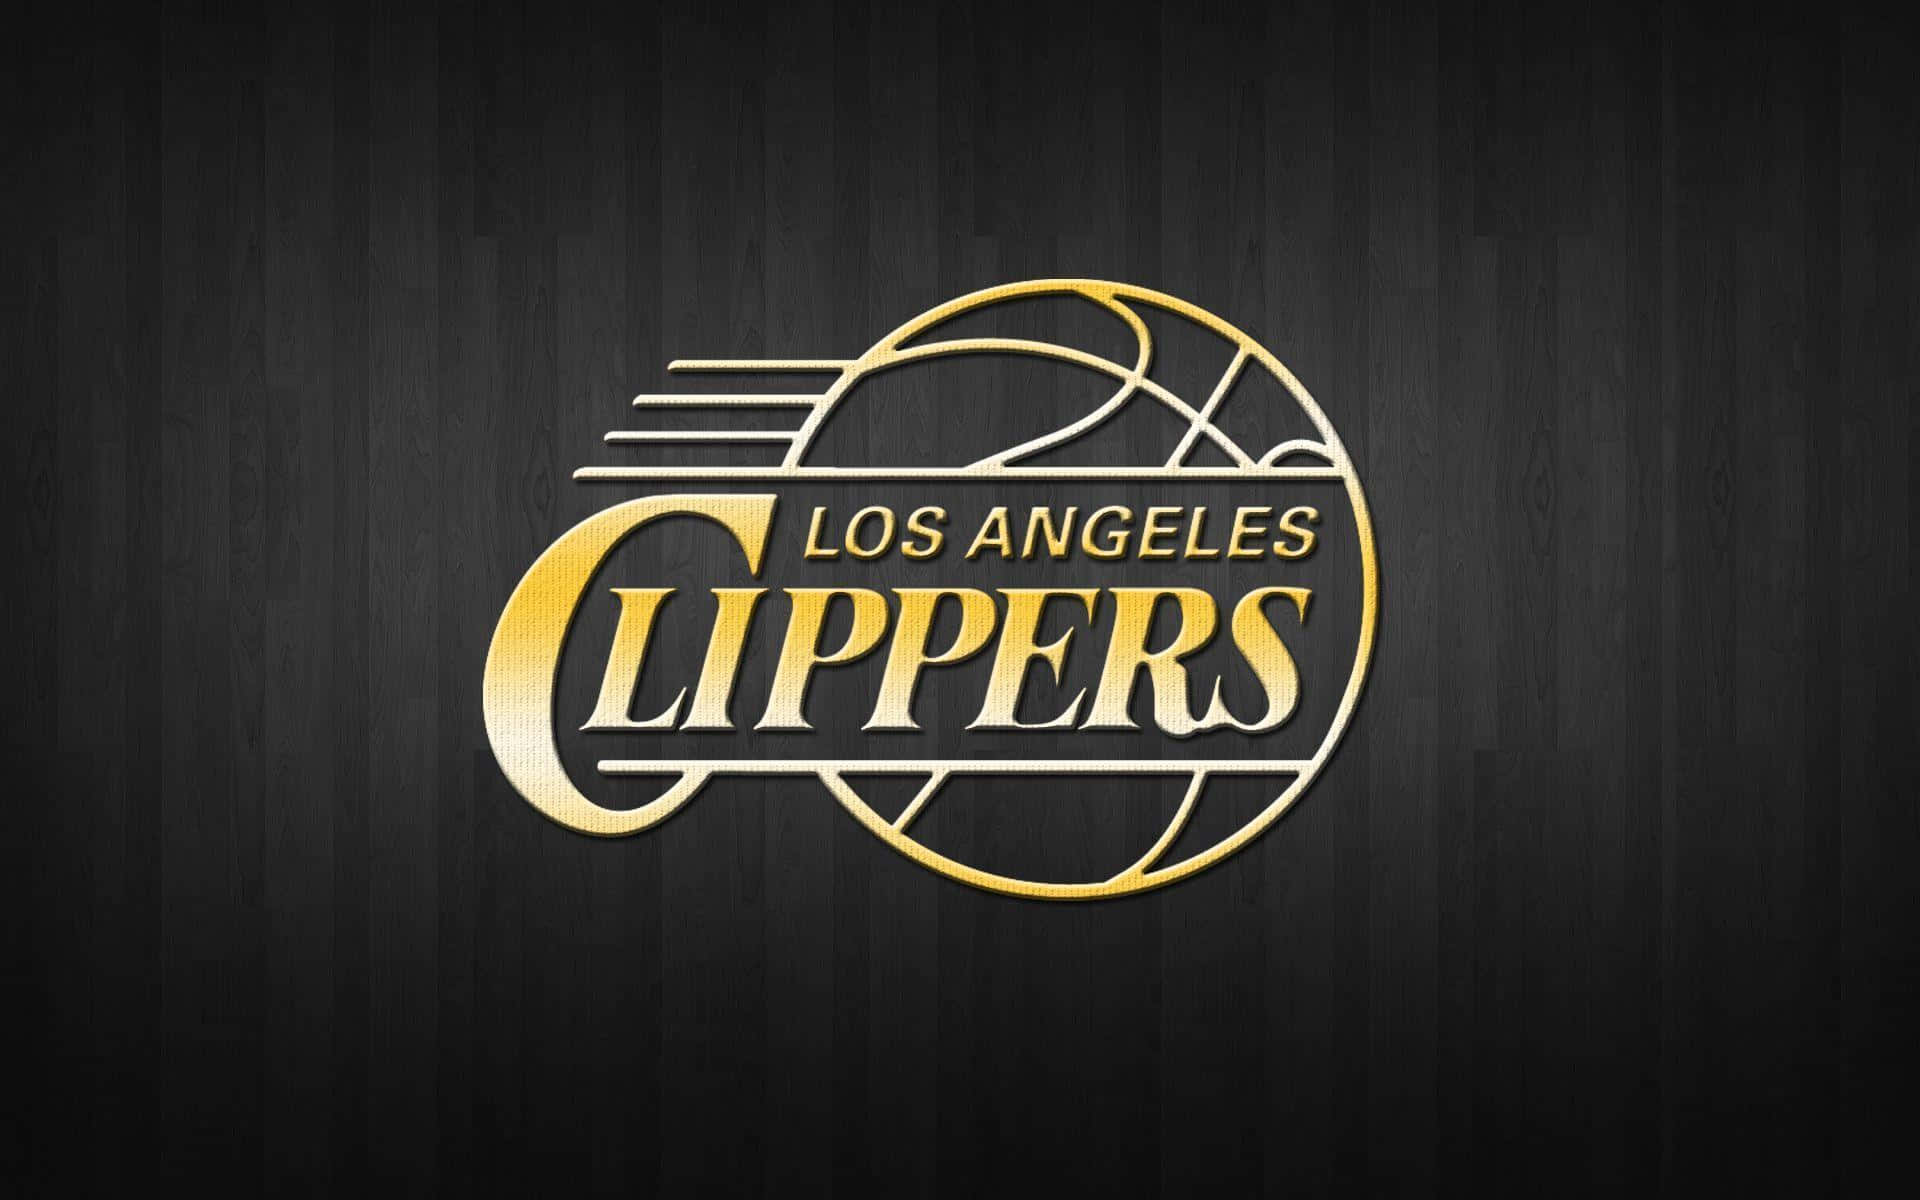 Equipode Baloncesto Dorado Del Logotipo De Los La Clippers - Arte Digital Fondo de pantalla